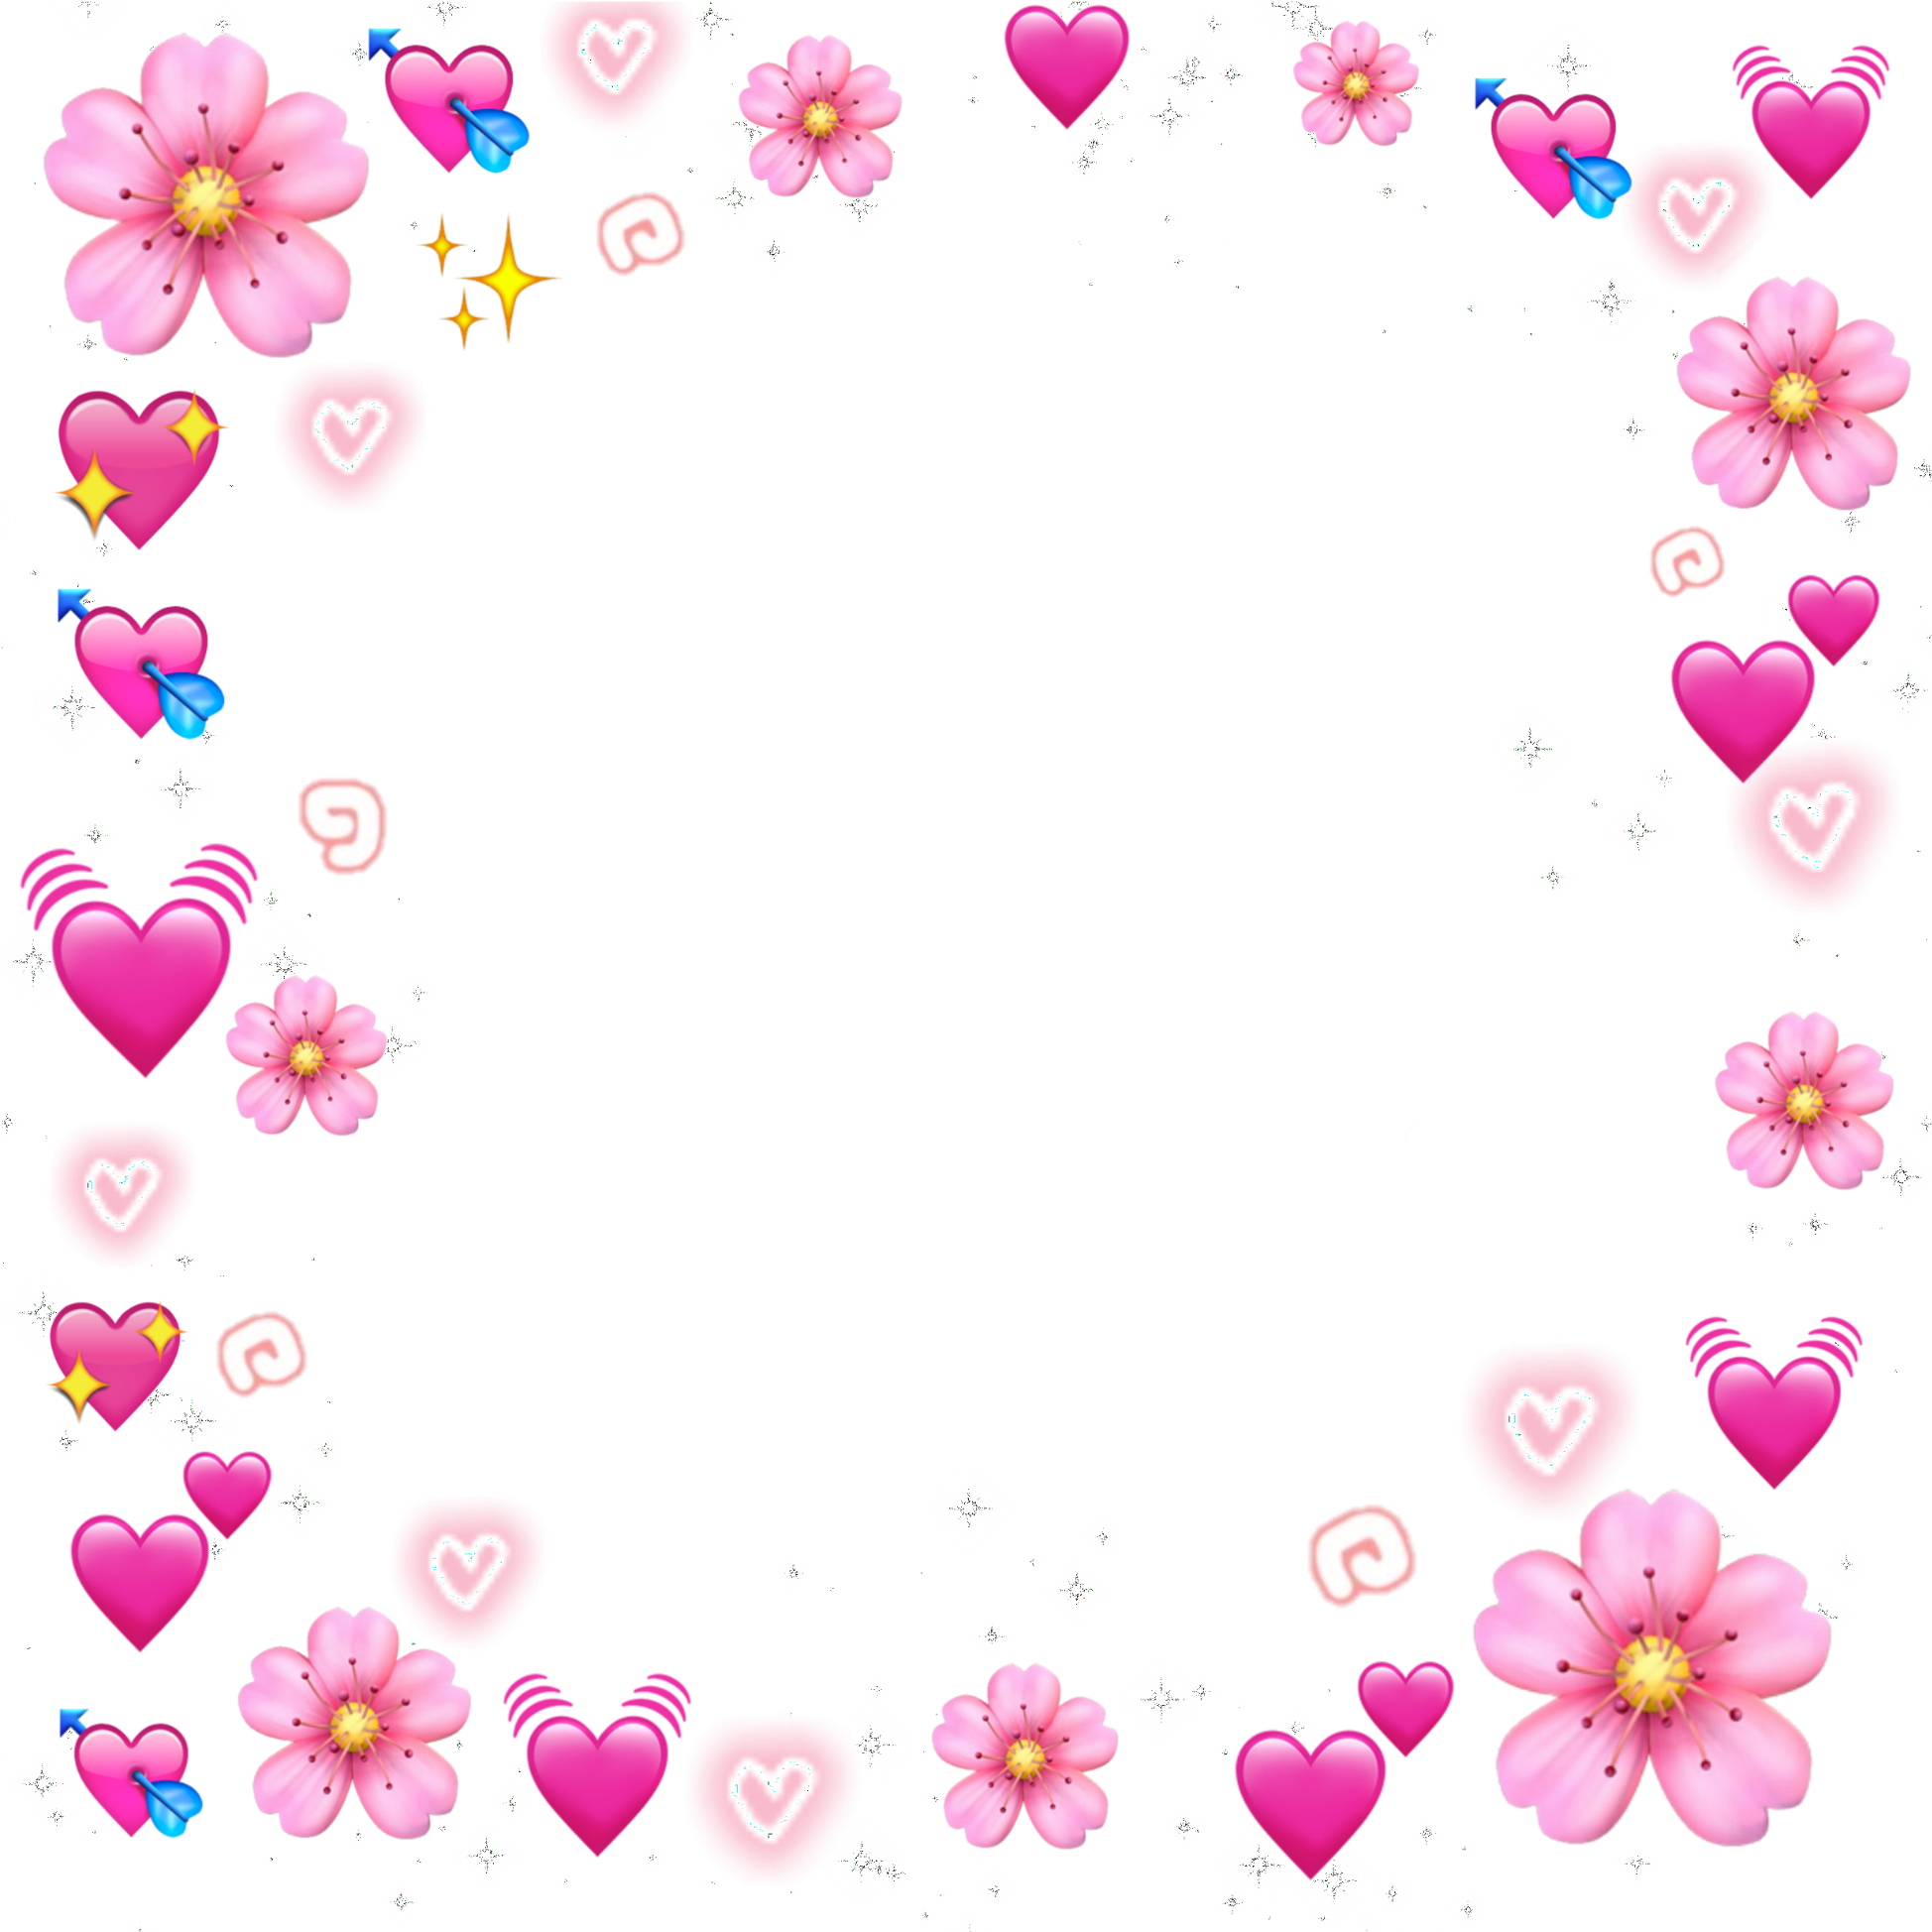 Immagine Trasparente del cuore emoji rosa